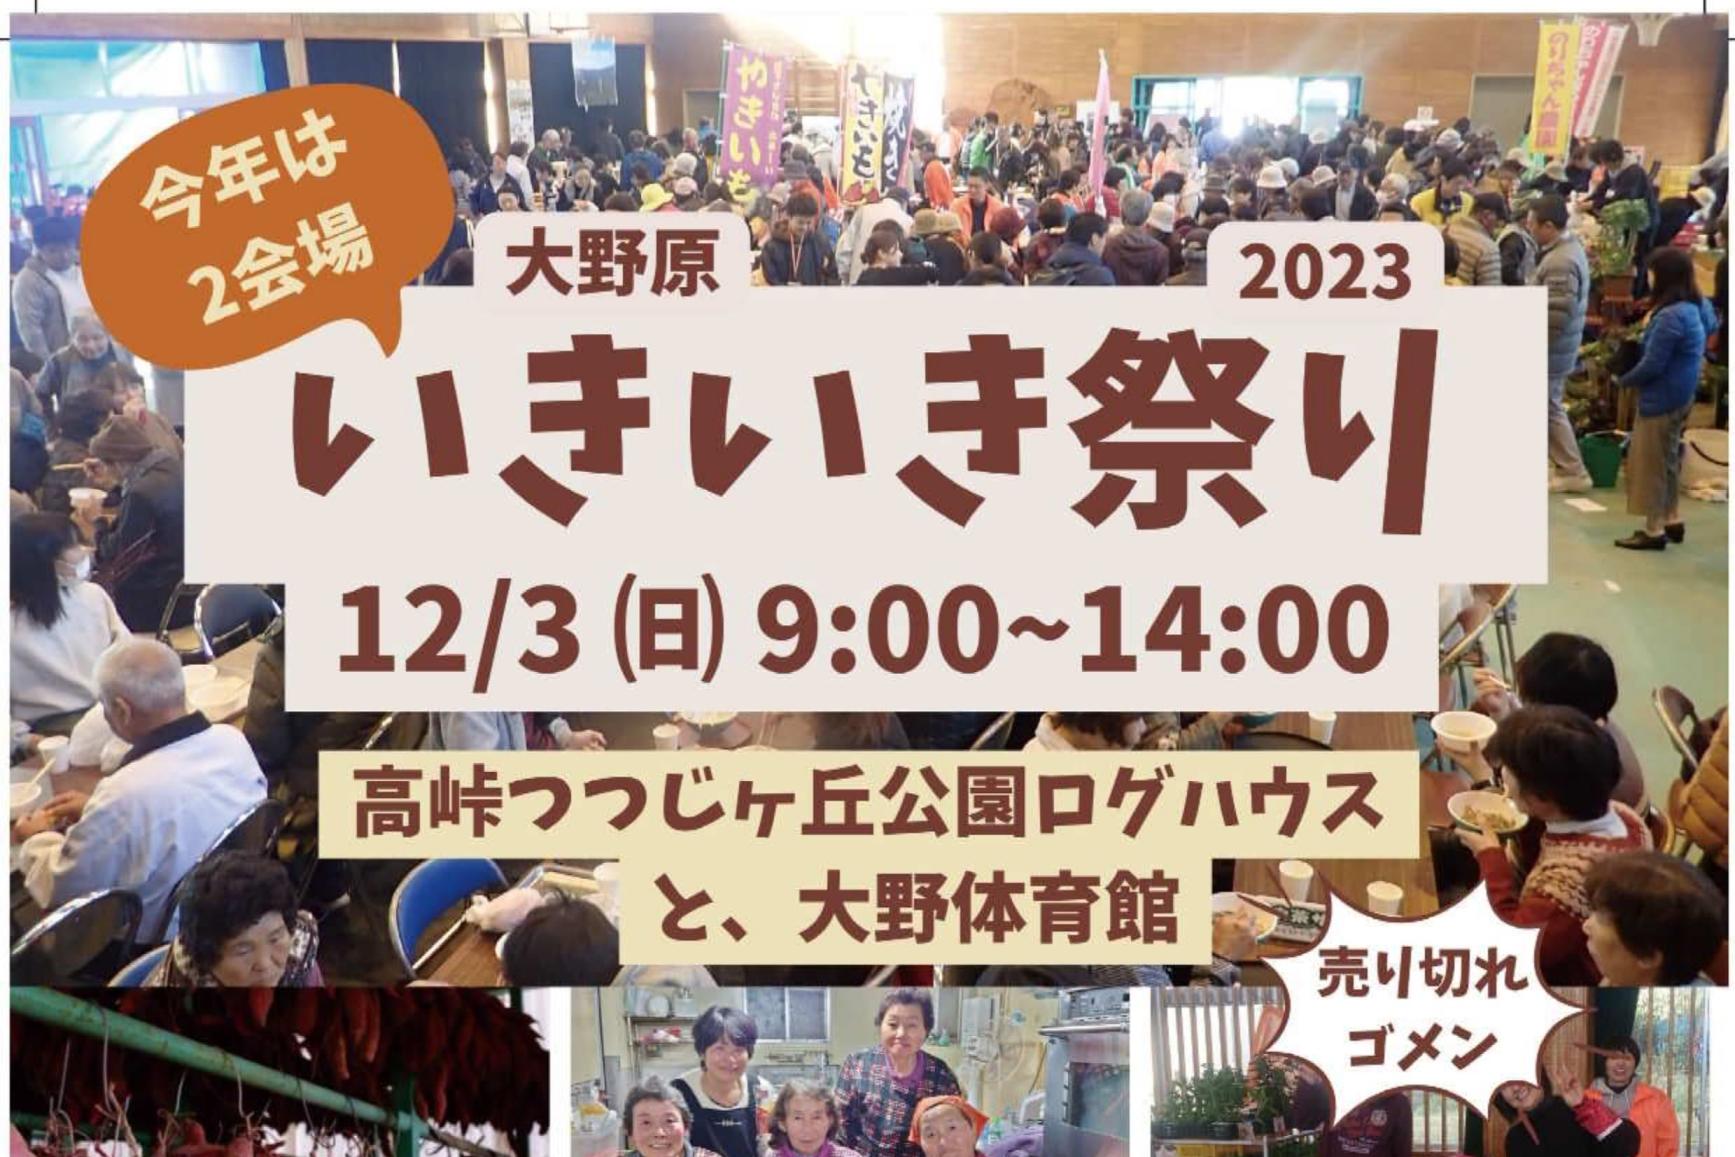 【2023】大野原いきいき祭り-1